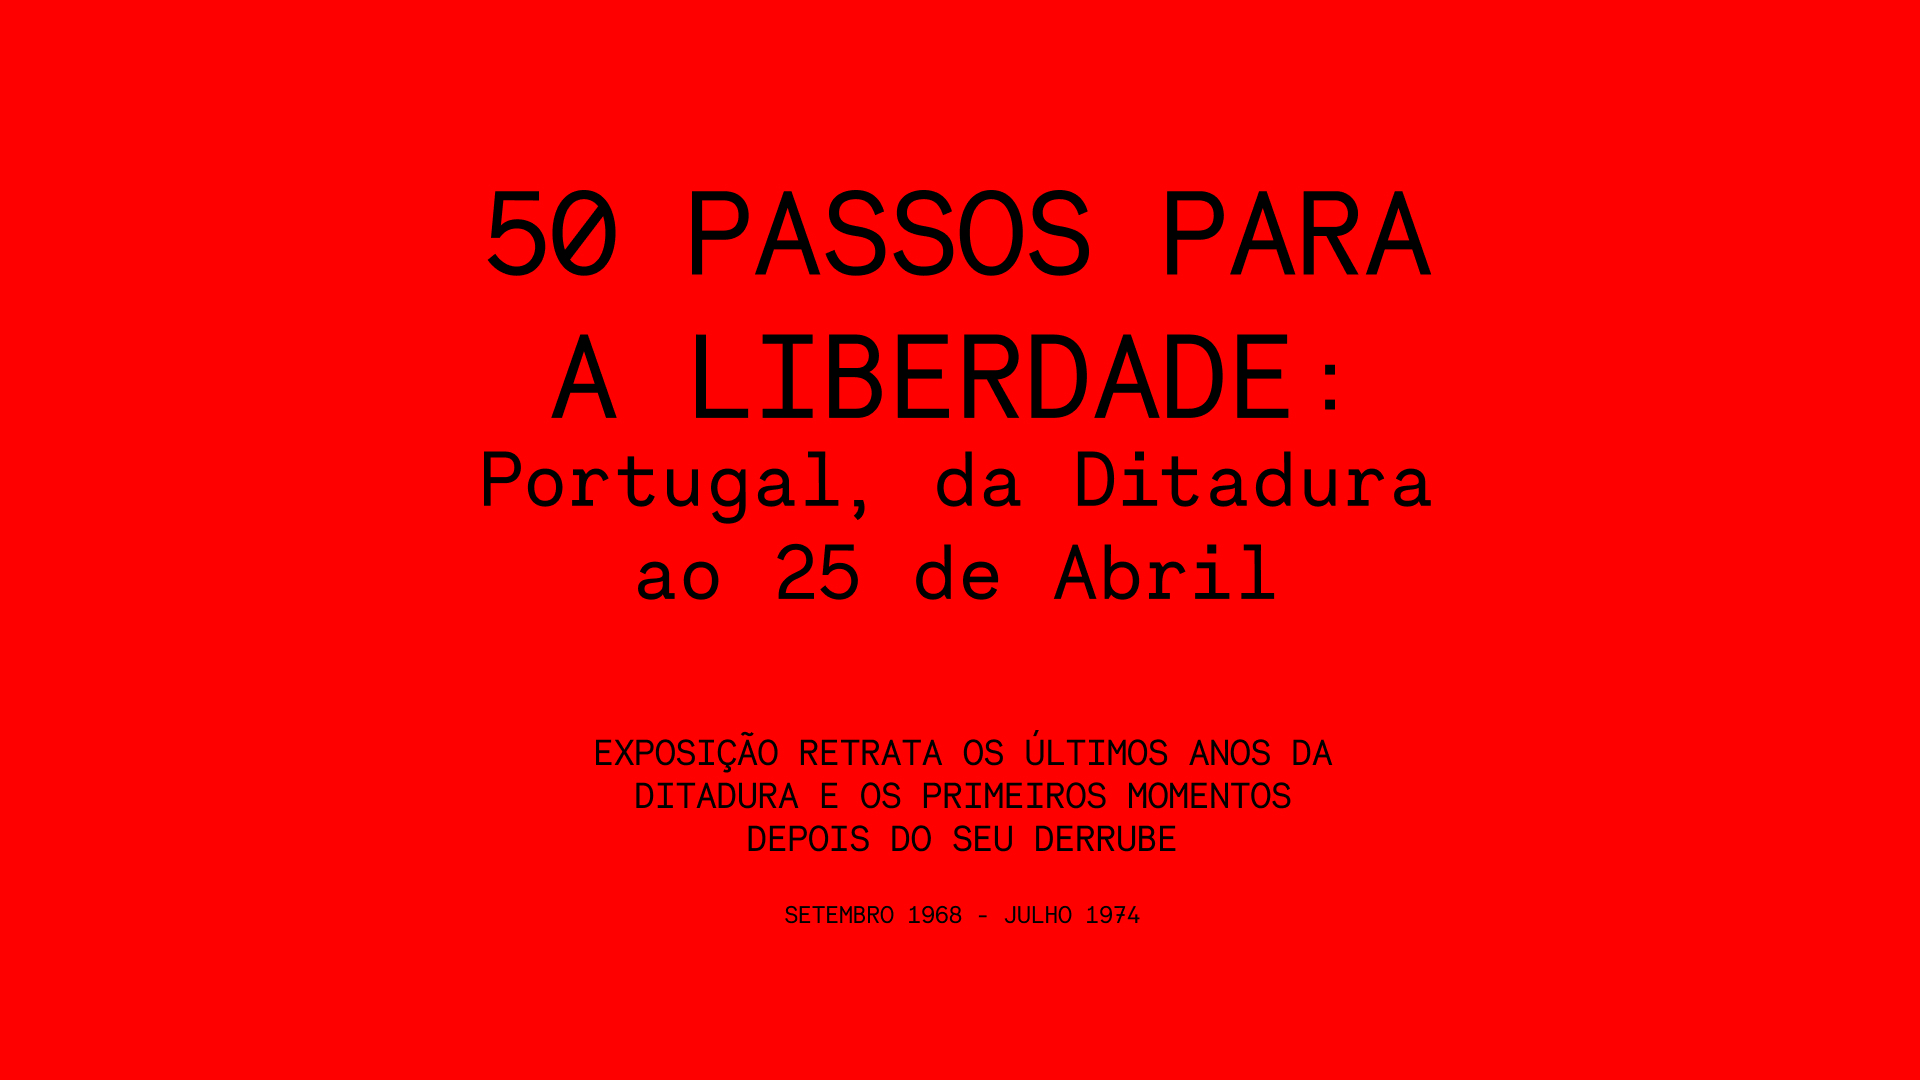 Capa Oficial do Evento “50 Passos Para a Liberdade” | MACAU